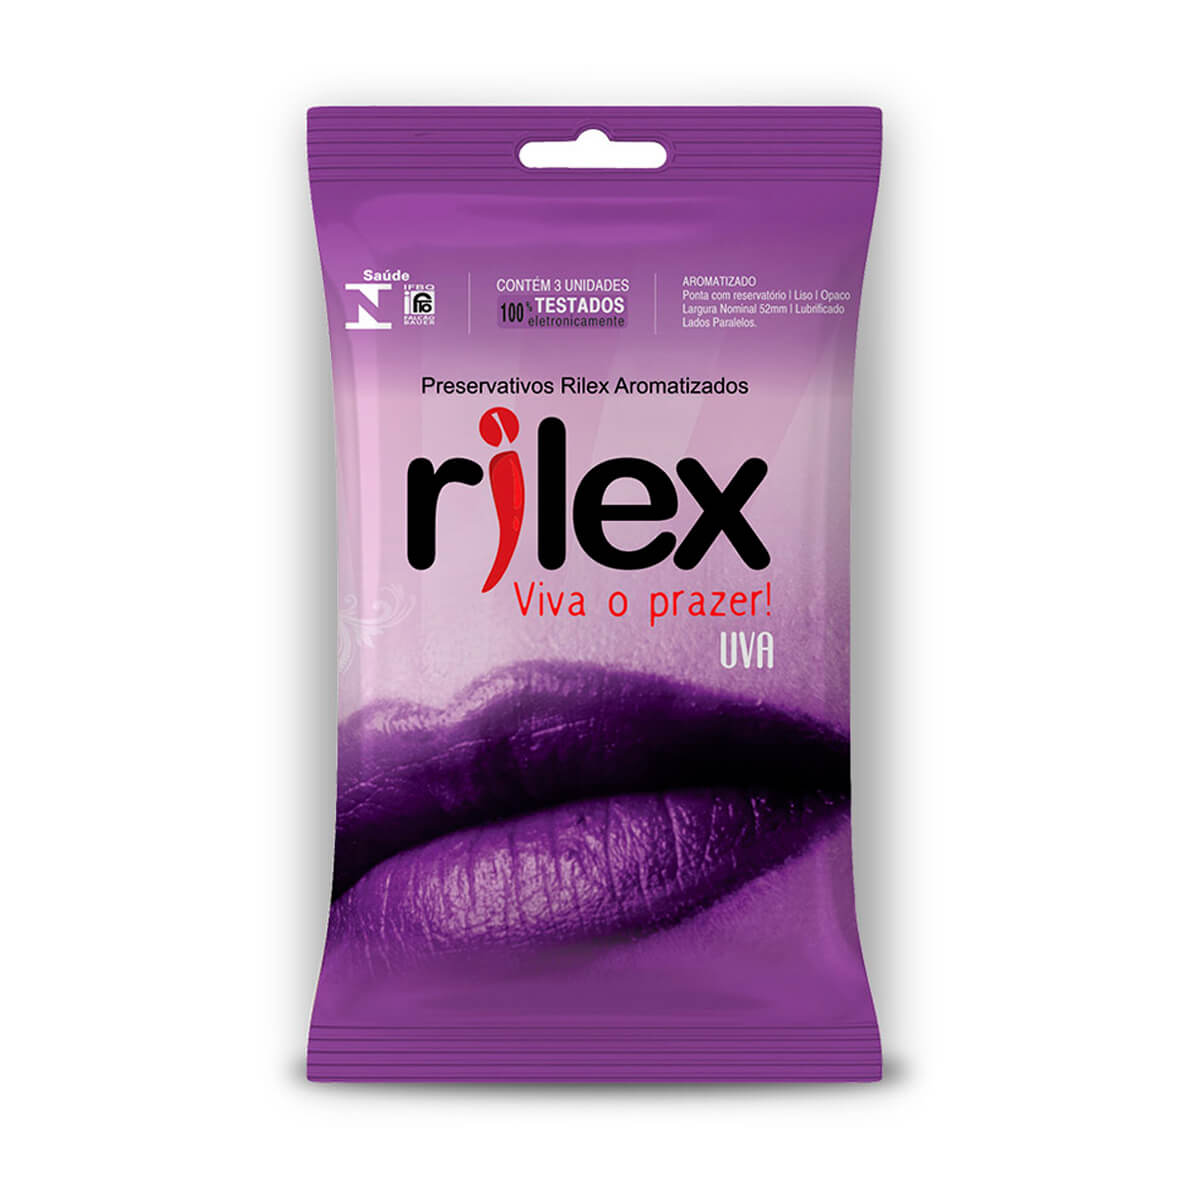 Preservativo Lubrificado com Aroma de Uva 3 Unidades Rilex